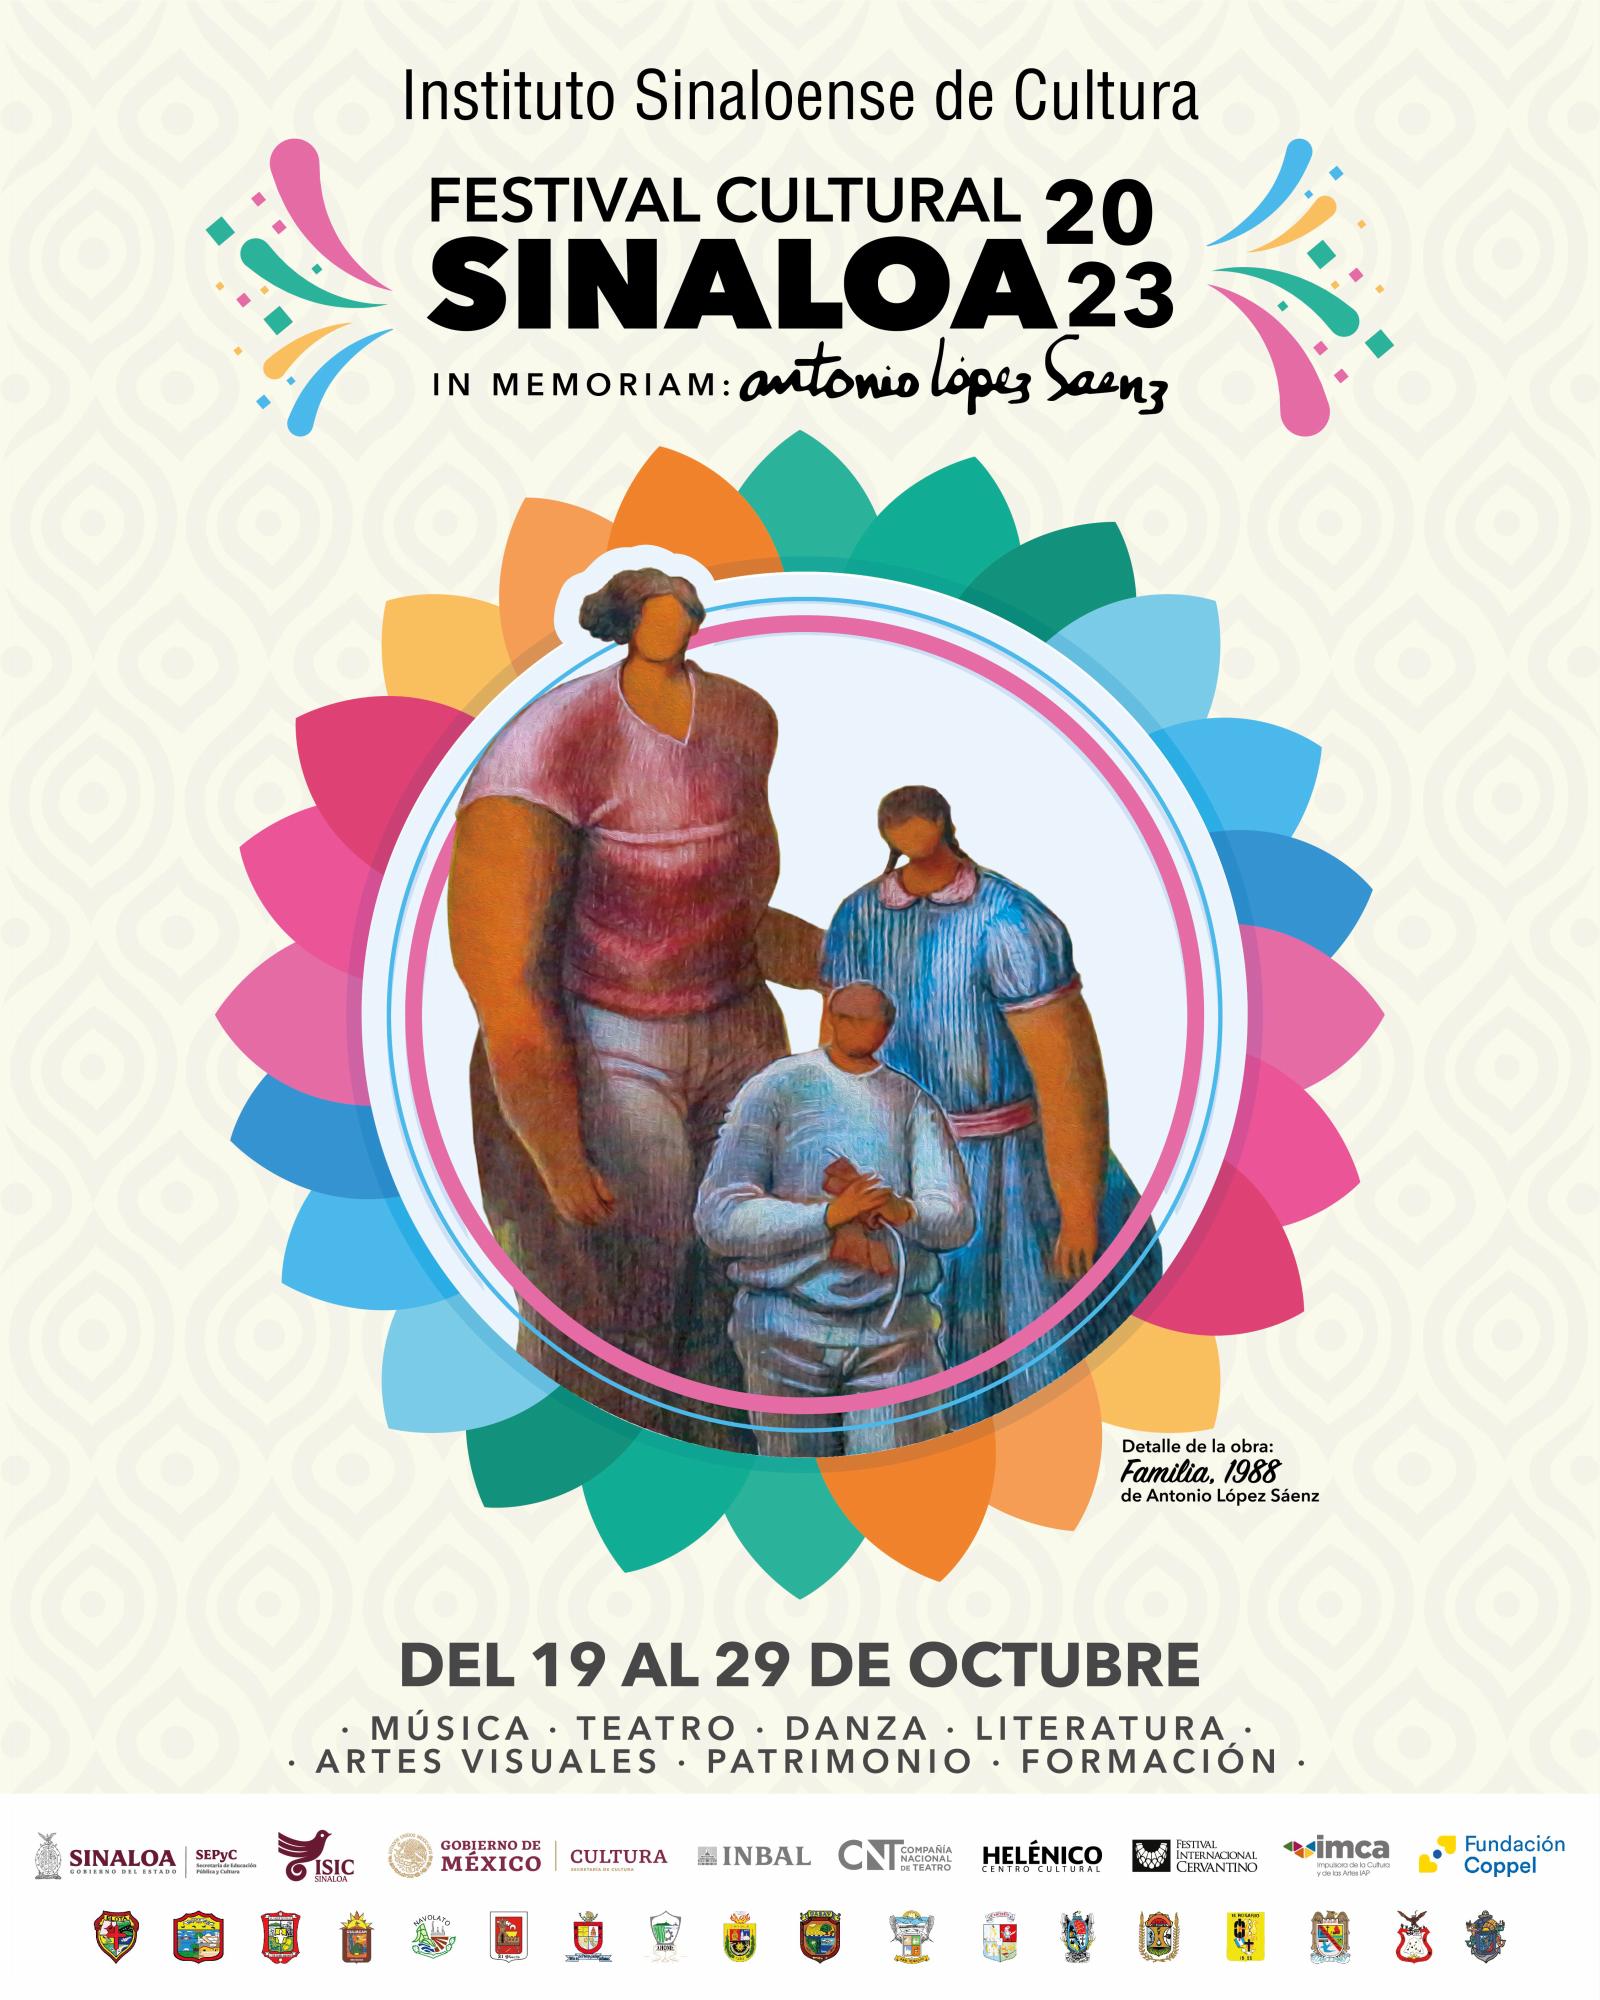 $!El Festival Cultural Sinaloa se llevará a cabo del 19 al 29 de octubre.